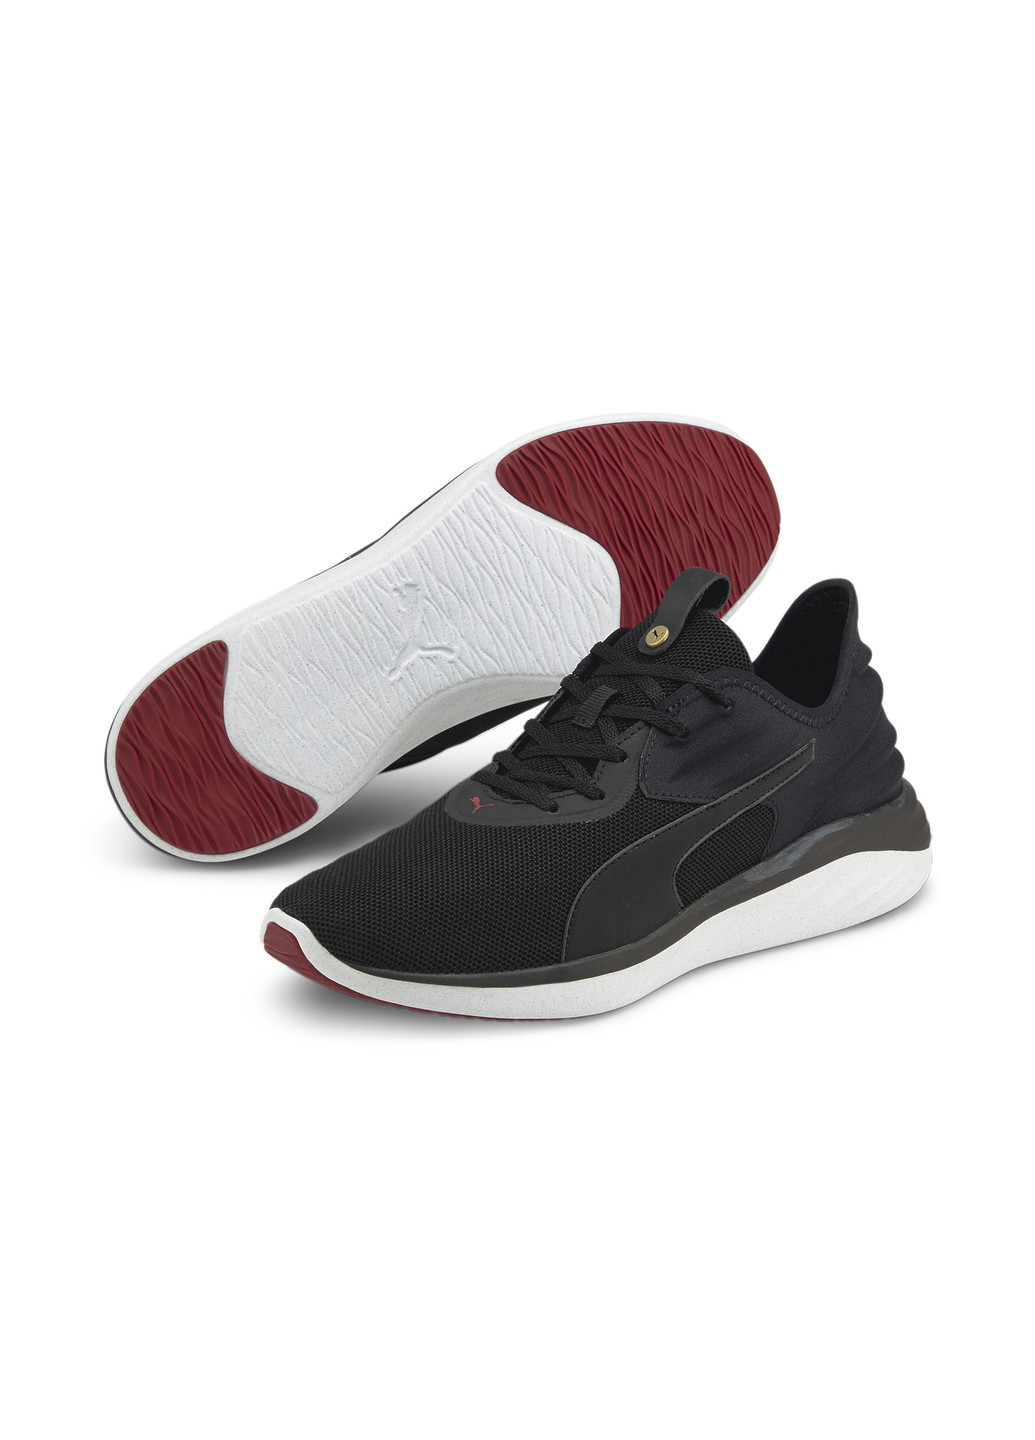 Черные всесезонные кроссовки better foam emerge 3d men's running shoes Puma